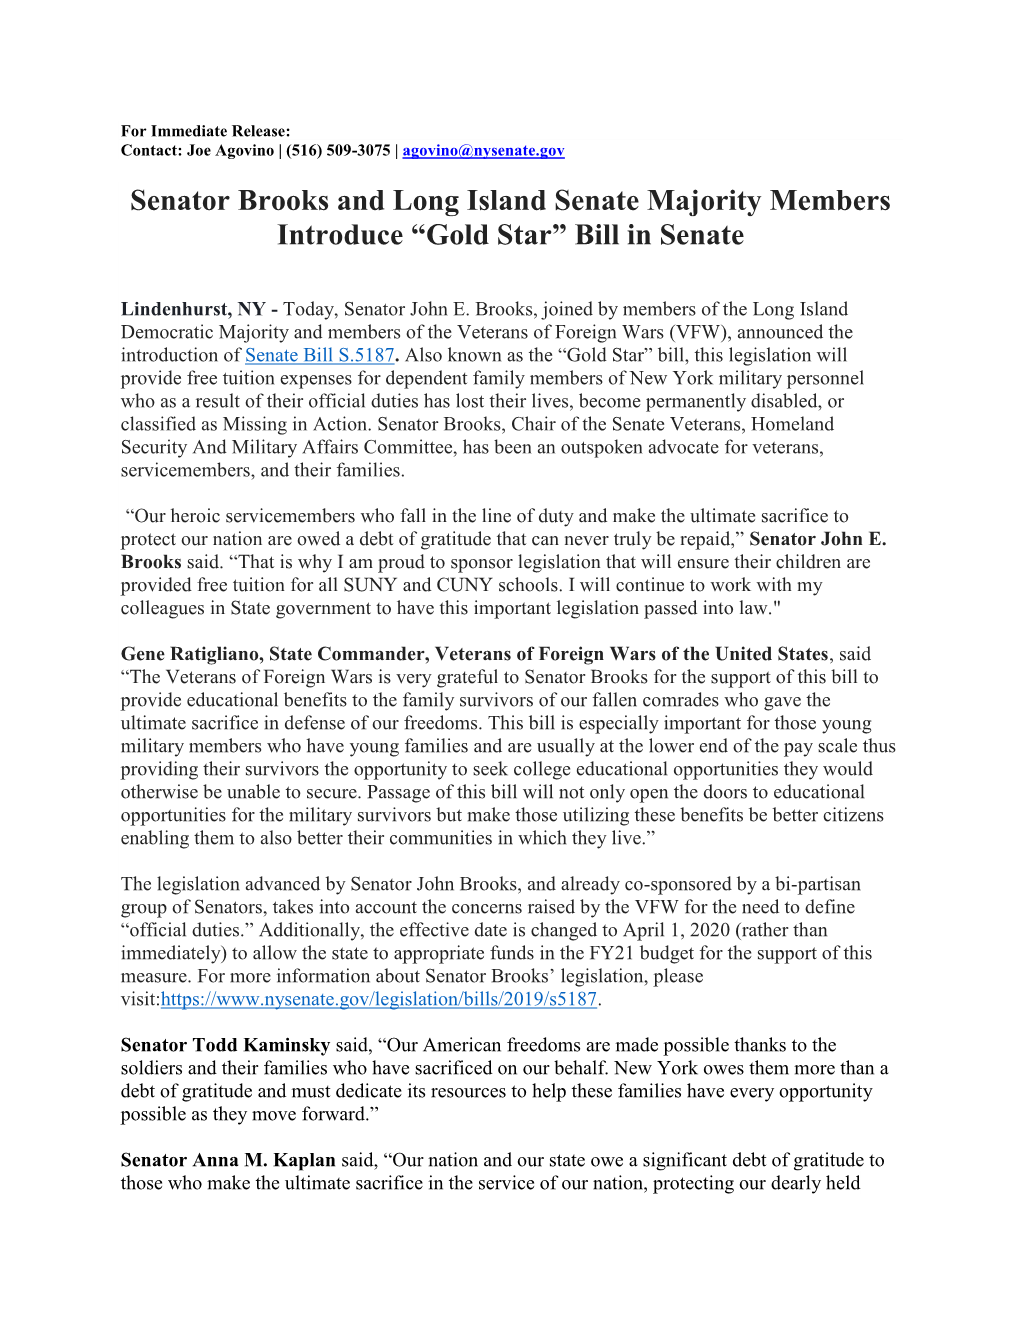 Senator Brooks and Long Island Senate Majority Members Introduce “Gold Star” Bill in Senate